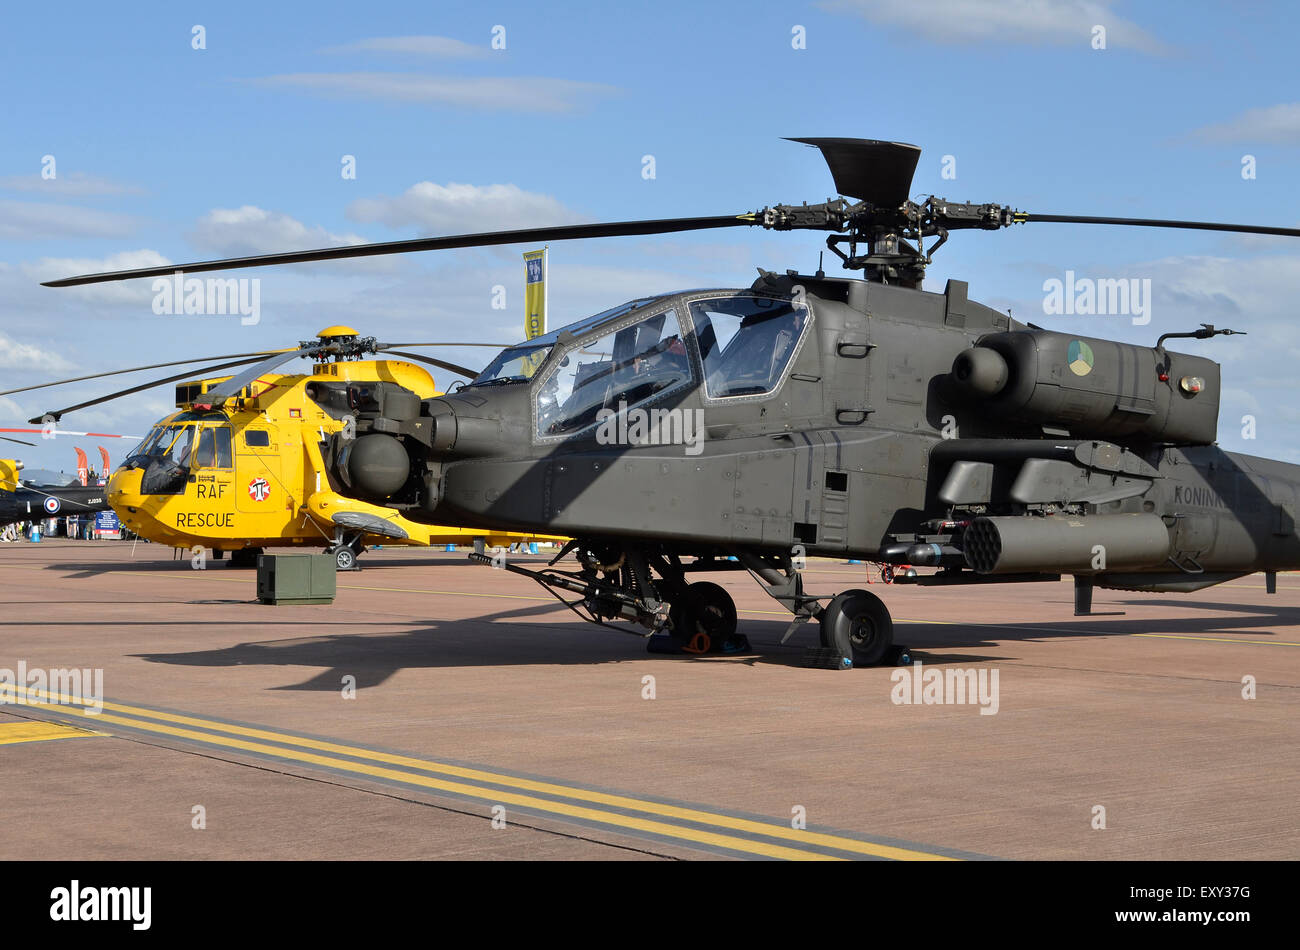 La Fuerza Aérea Real de los Países Bajos AH-64D Apache y helicópteros Sea King de la RAF en exhibición en el RIAT 2015, Fairford, en el Reino Unido. Crédito: Antony Ortiga/Alamy Live News Foto de stock